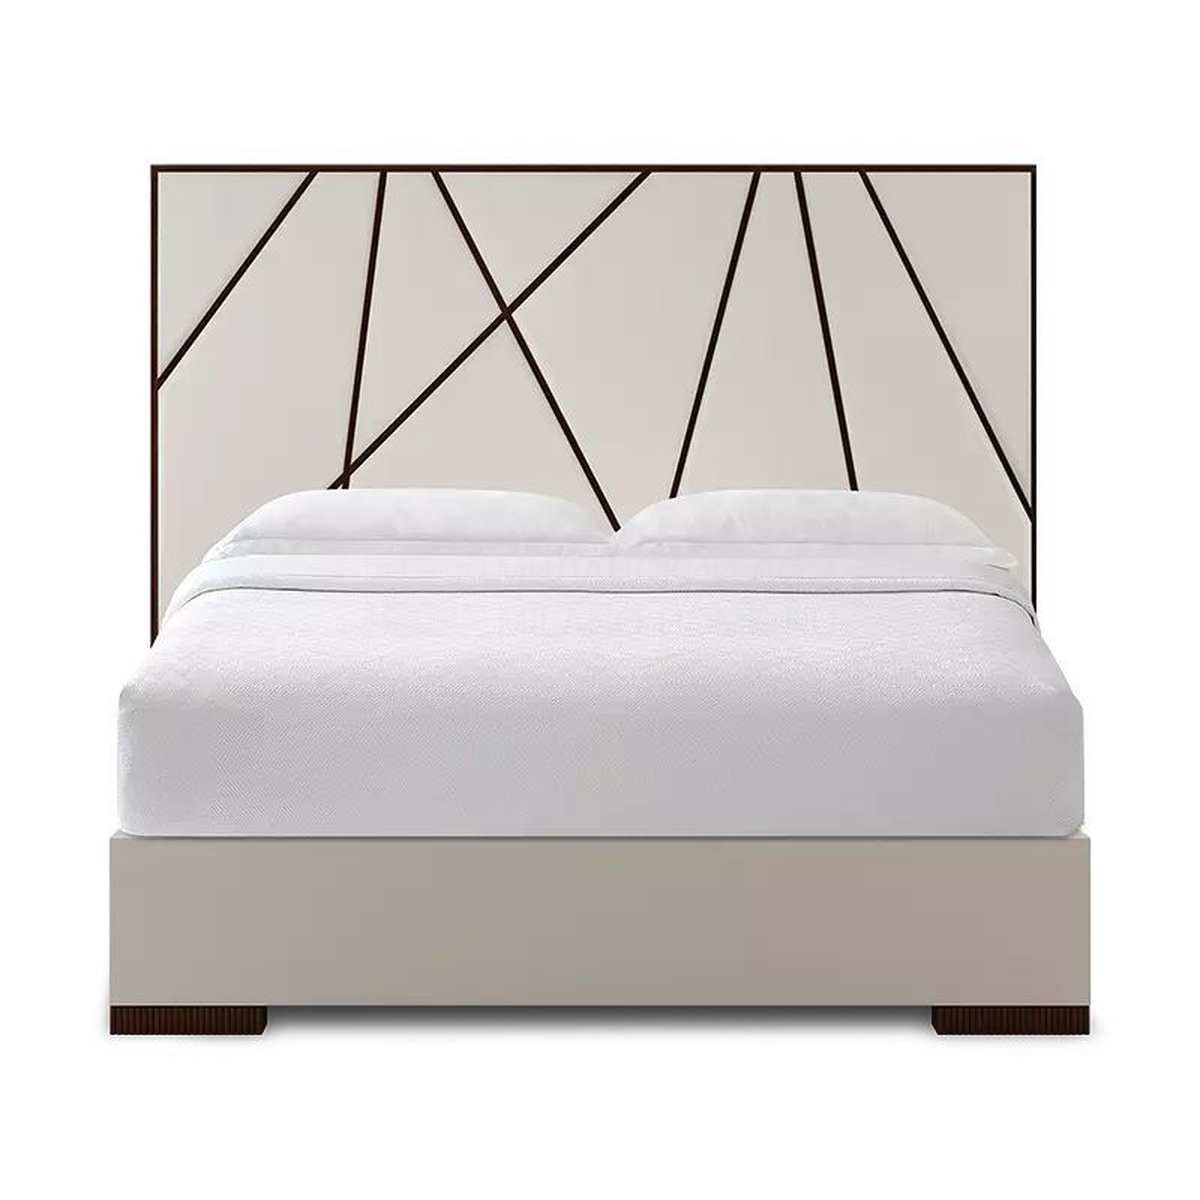 Двуспальная кровать Lustig bed  из США фабрики CHRISTOPHER GUY